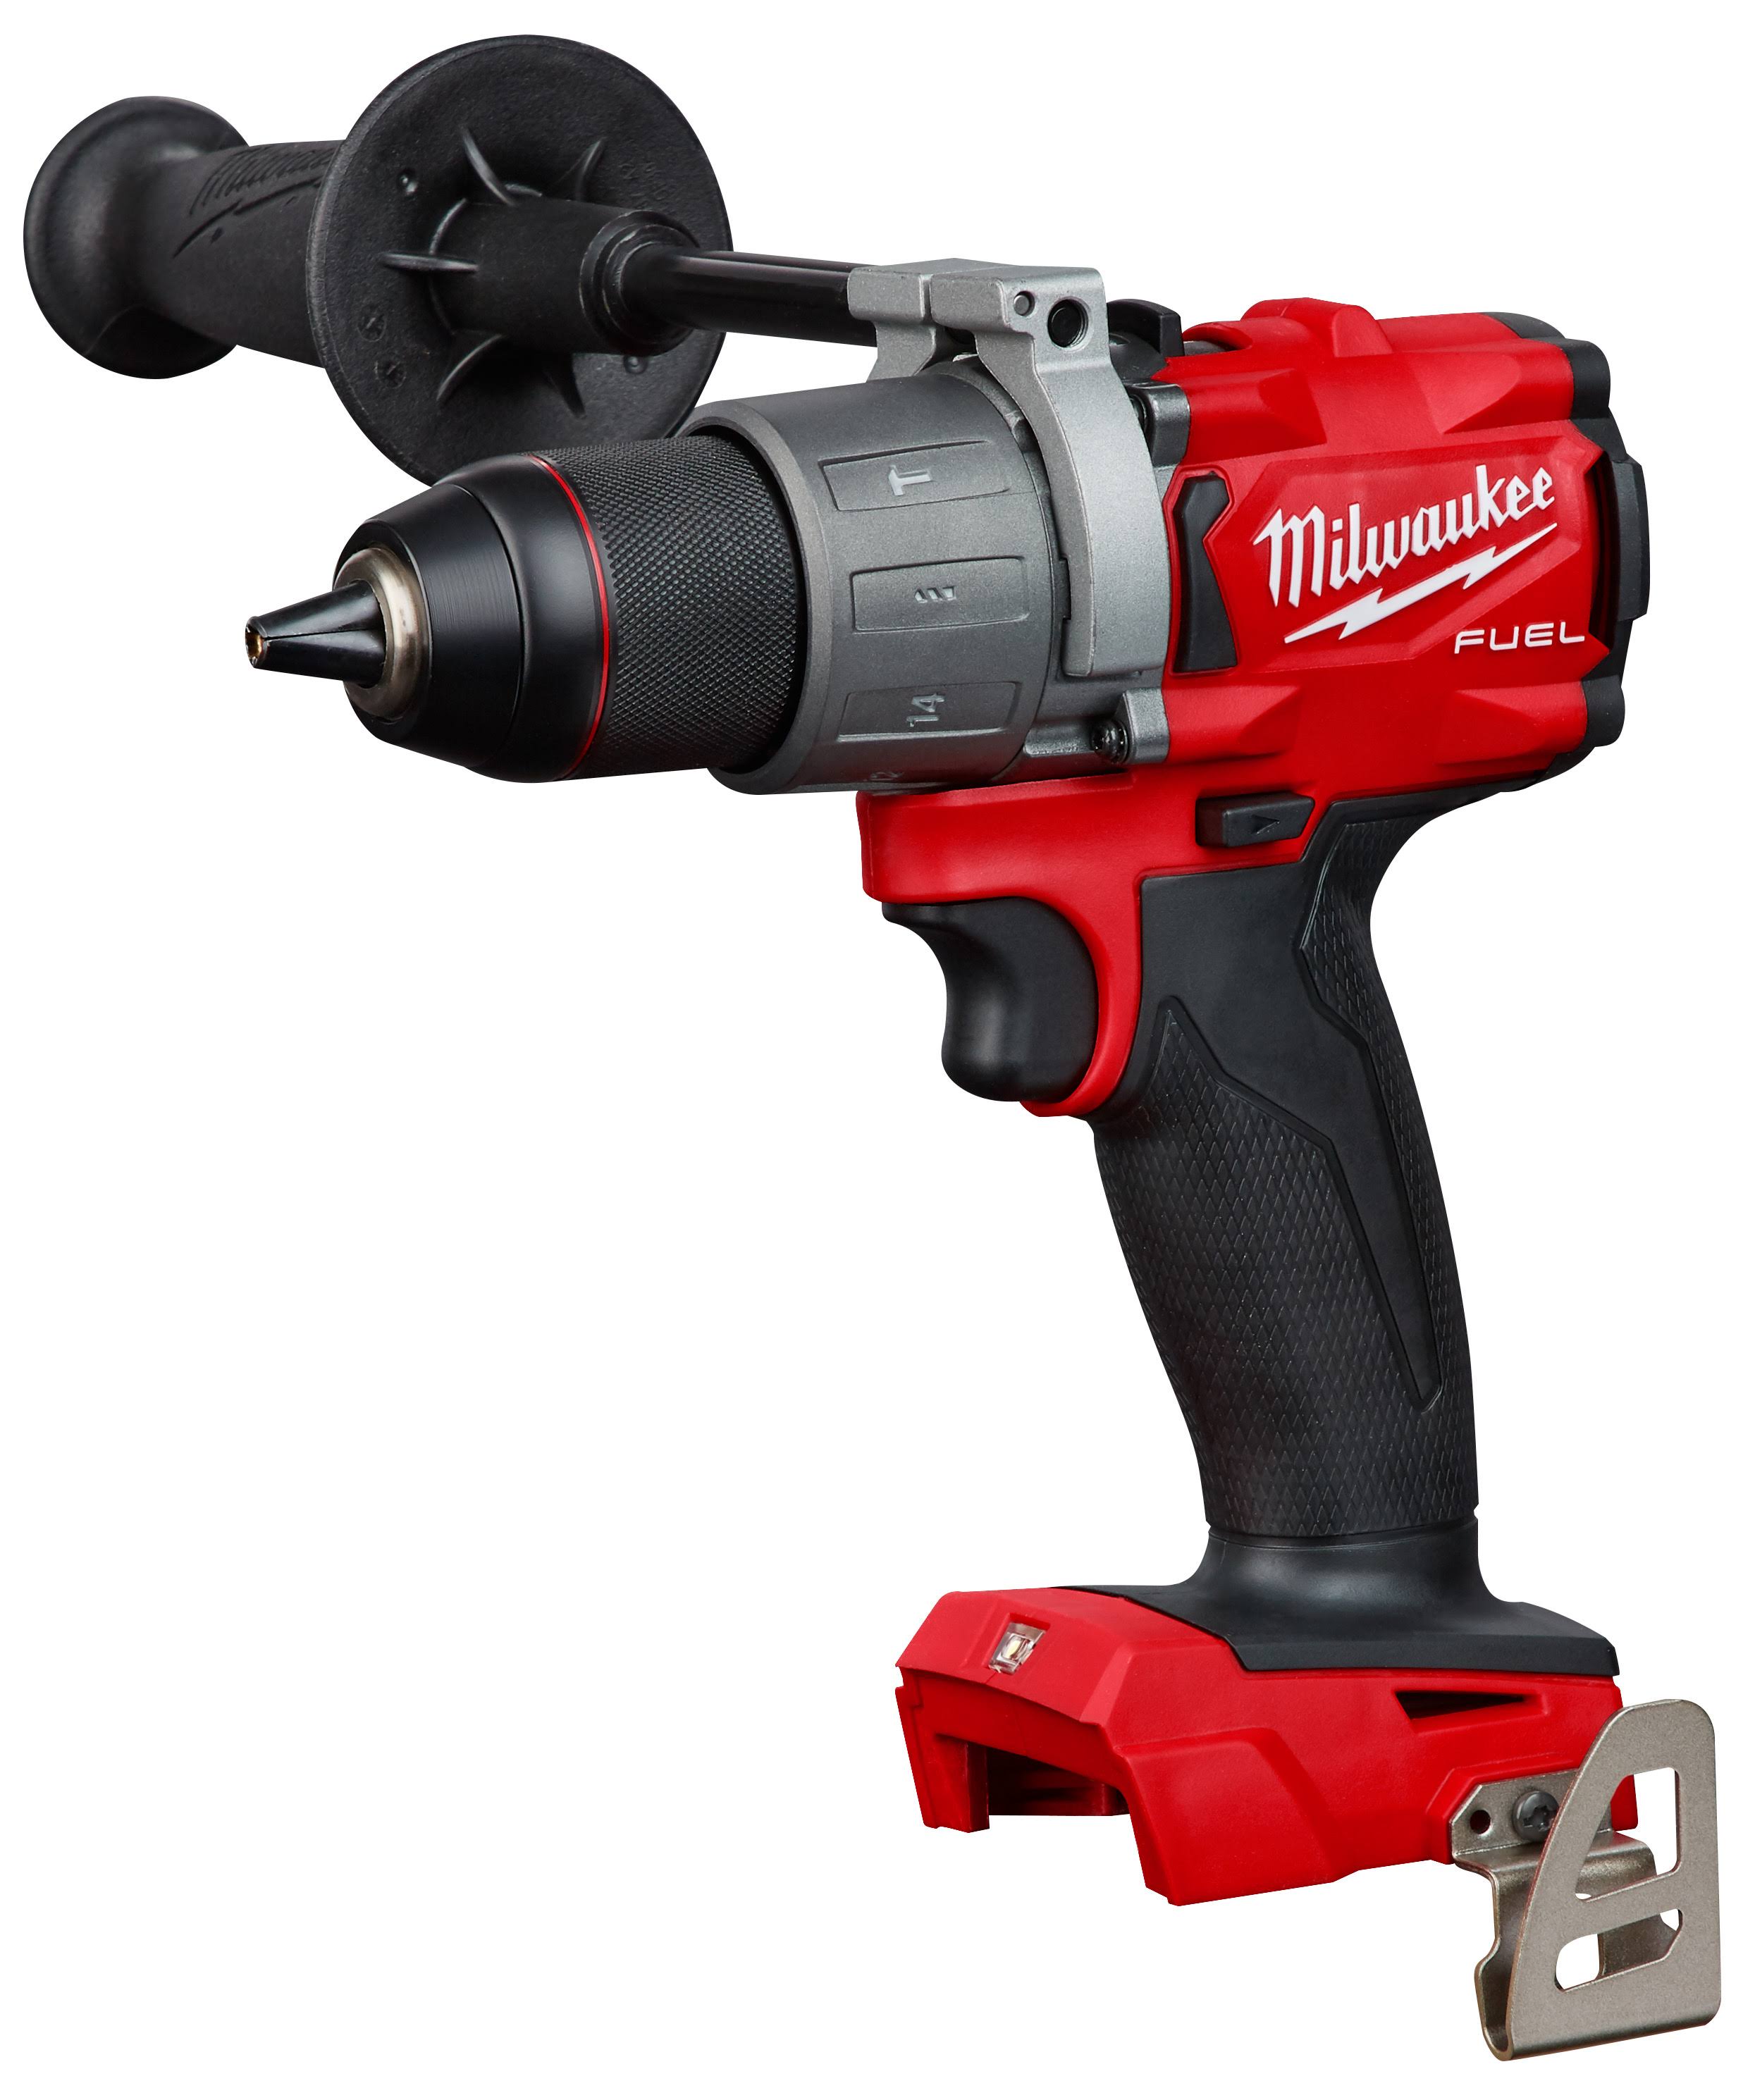 Milwaukee 2804-20 M18 Fuel Hammer Drill - 18V, 1/2"